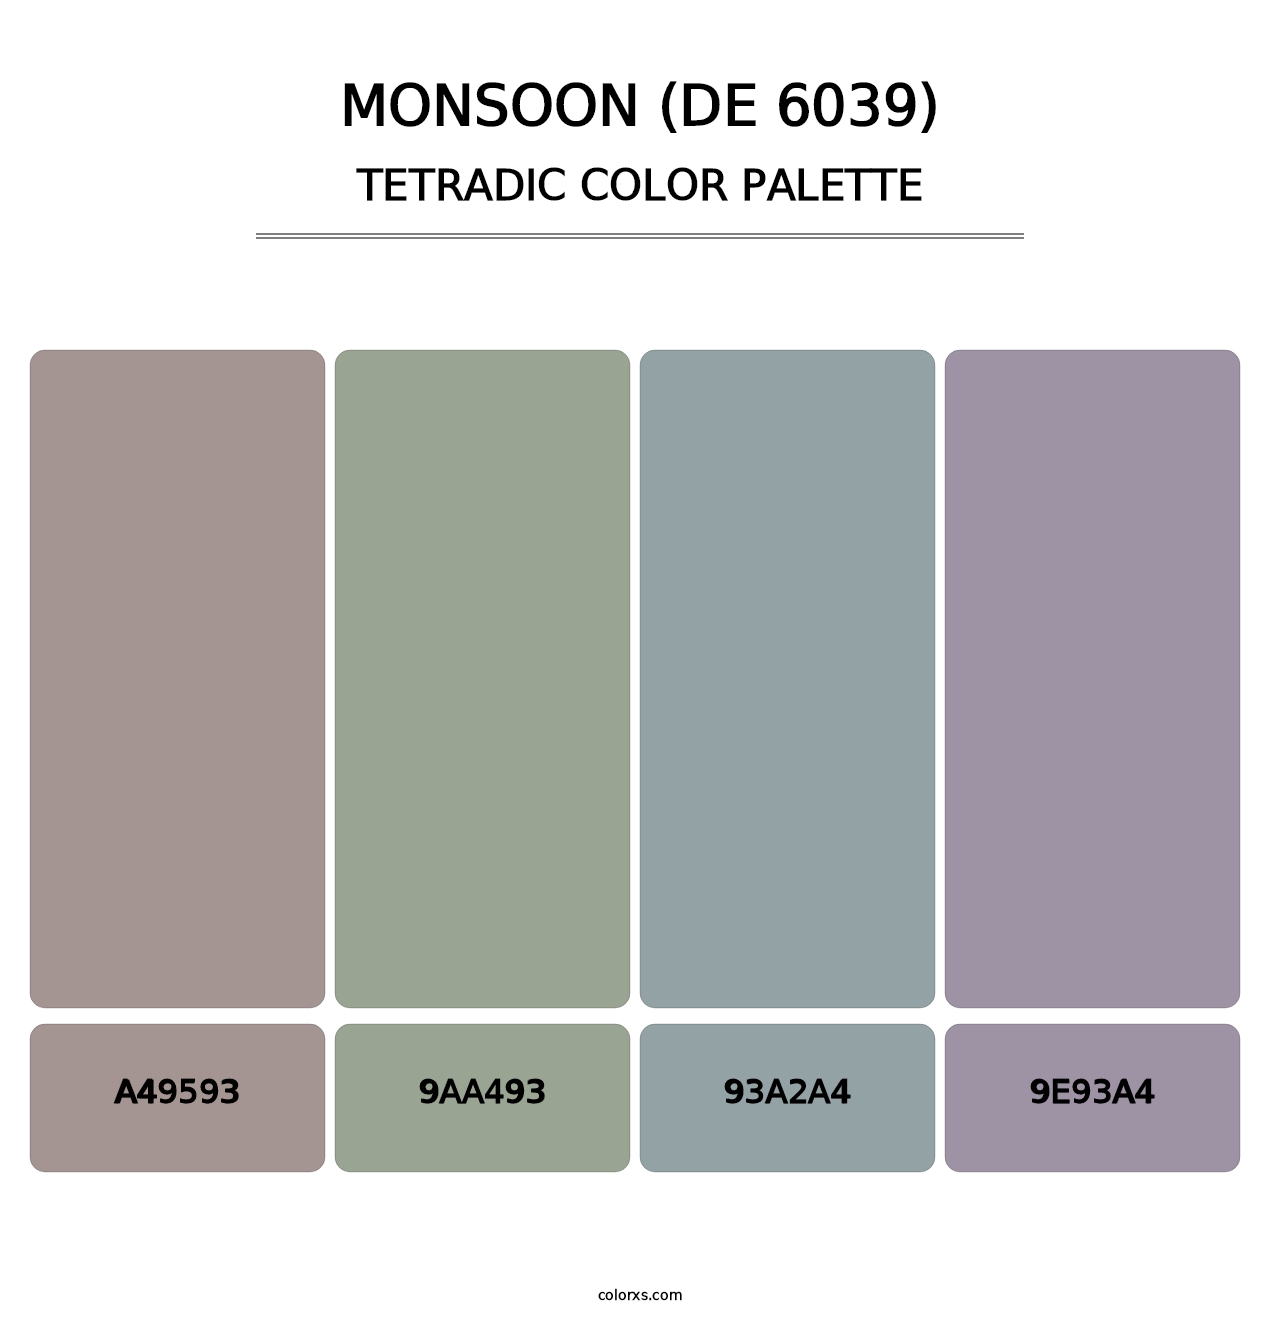 Monsoon (DE 6039) - Tetradic Color Palette